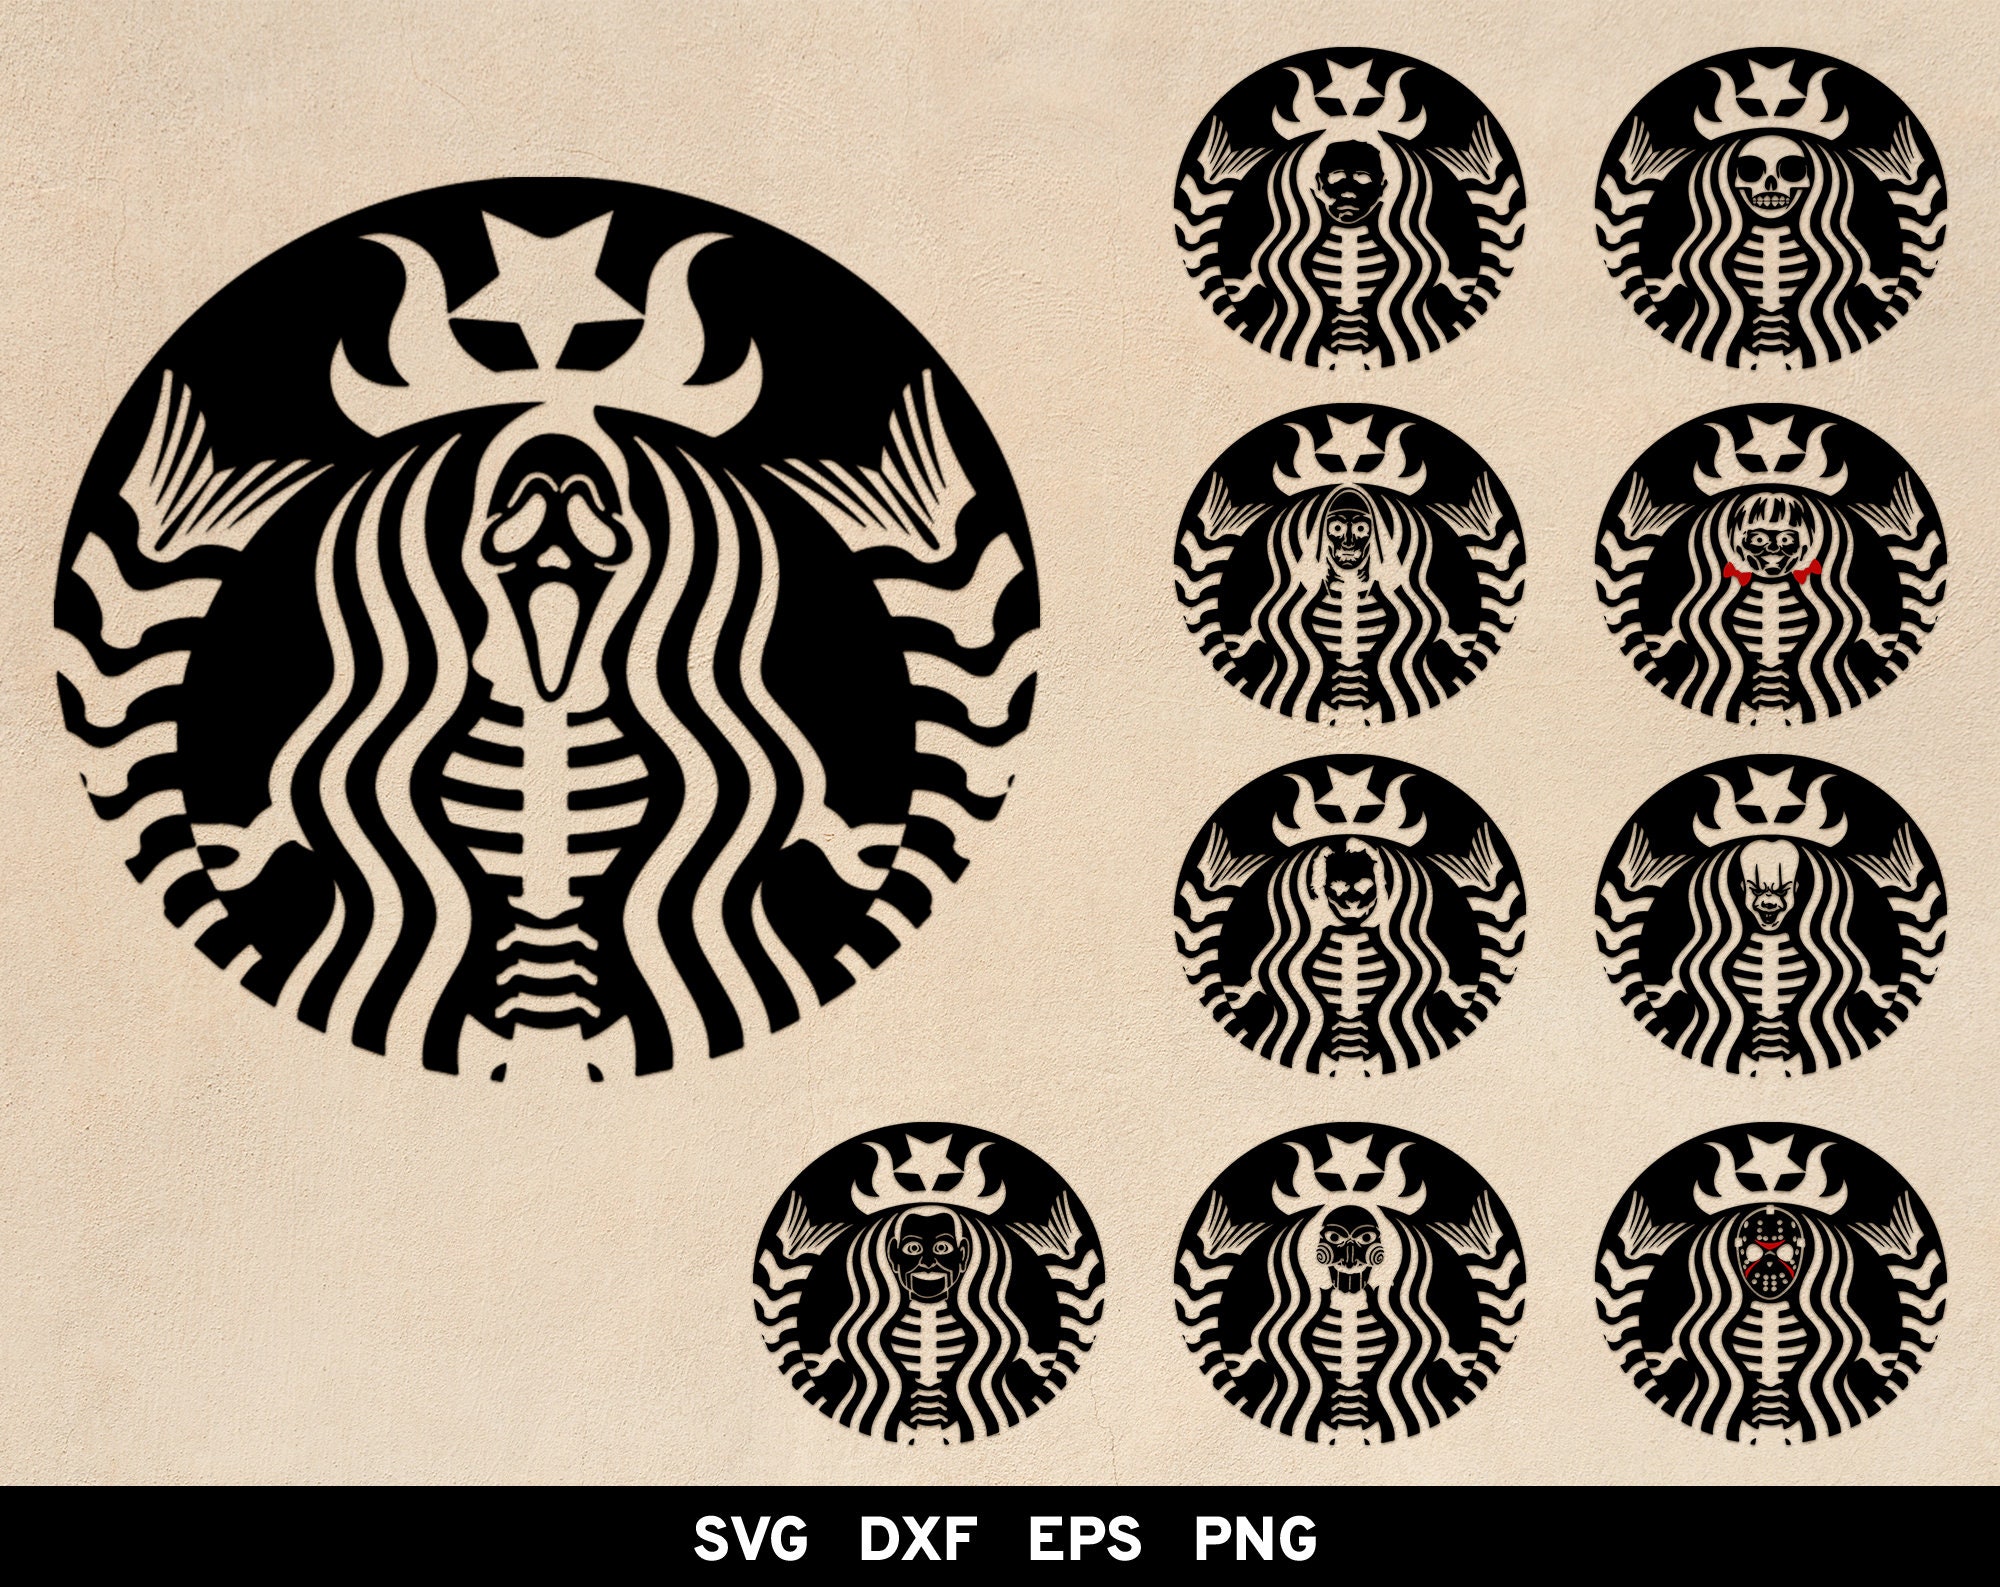 Cart - Origin SVG Art  Svg, Starbucks, Starbucks tumbler